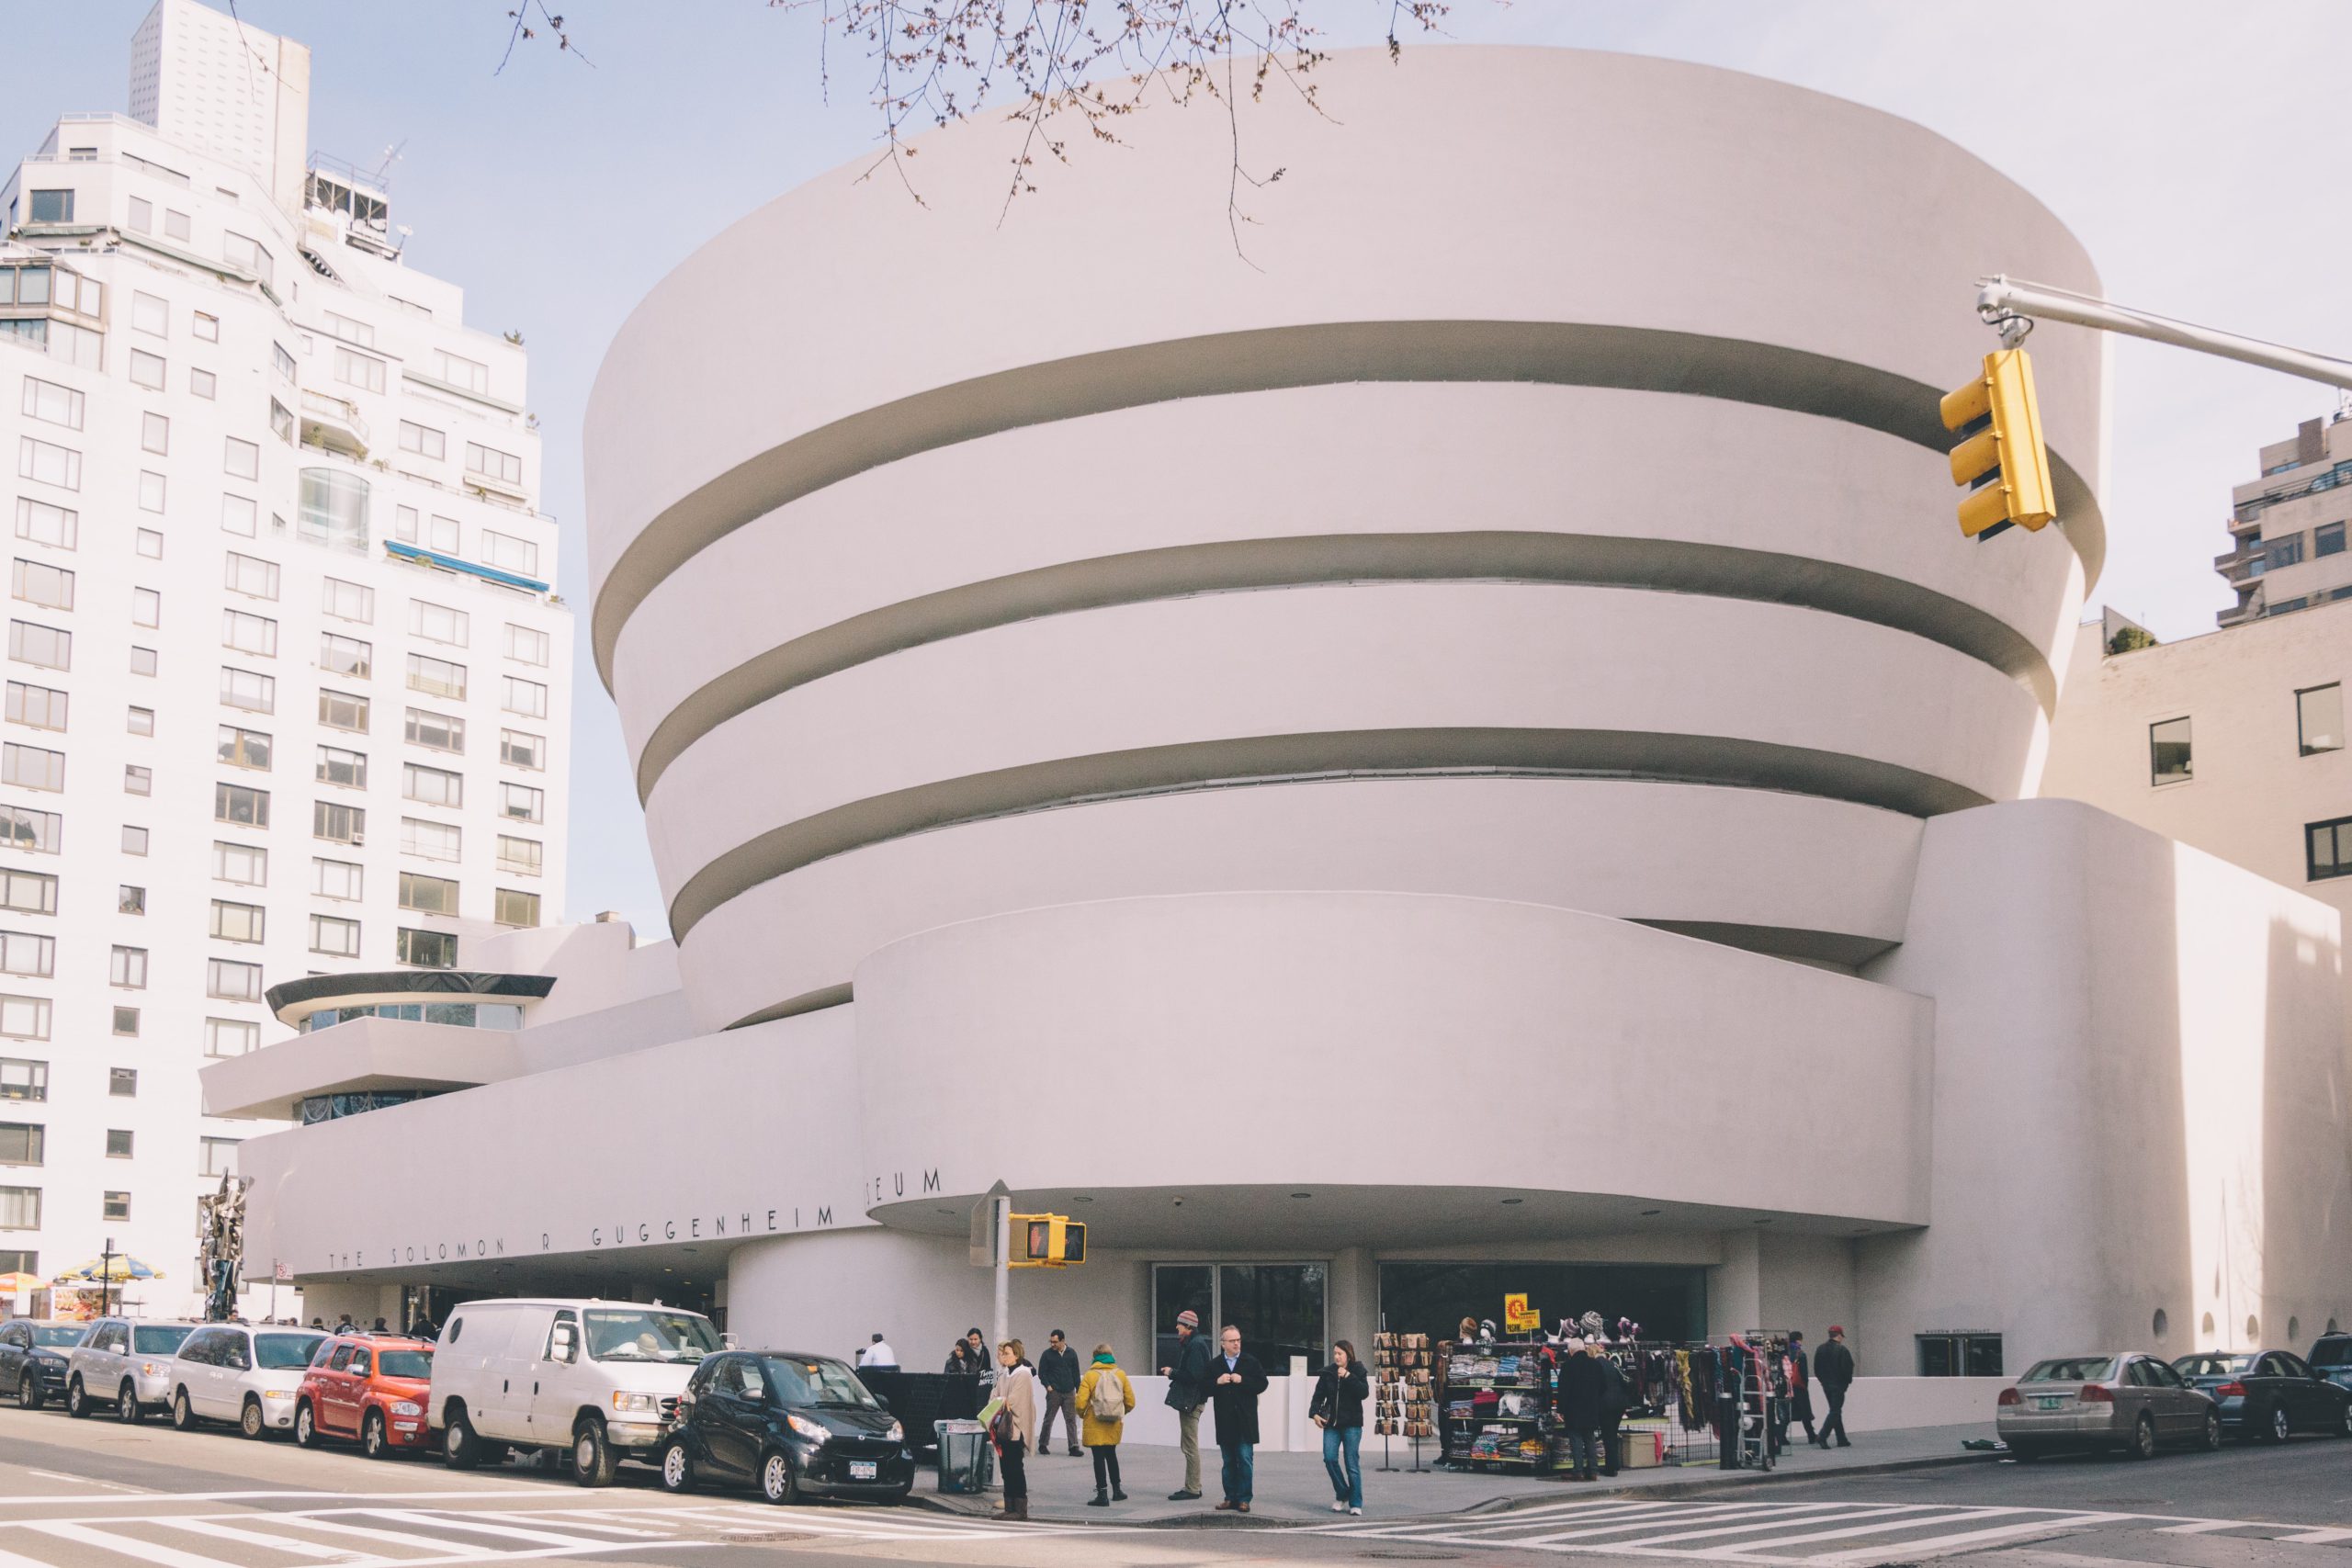 NYC Guggenheim Museum